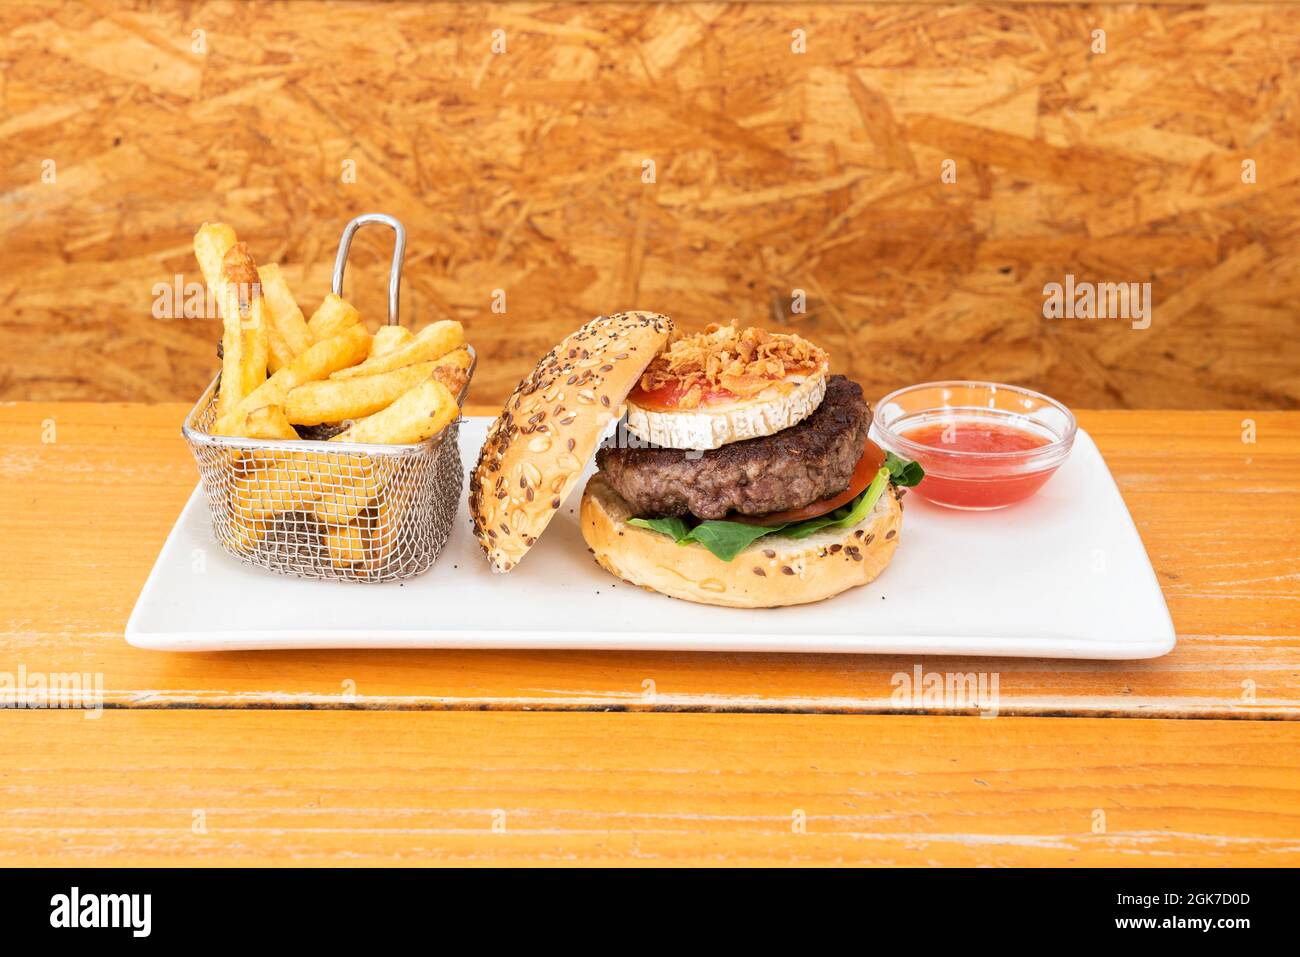 Köstlicher Rindfleisch-Burger mit einer Scheibe Ziegenkäse, Tomatenmarmelade, knuspriger Zwiebel, Spinatblättern, Brot mit Samen und einer Seite Pommes frites Stockfoto